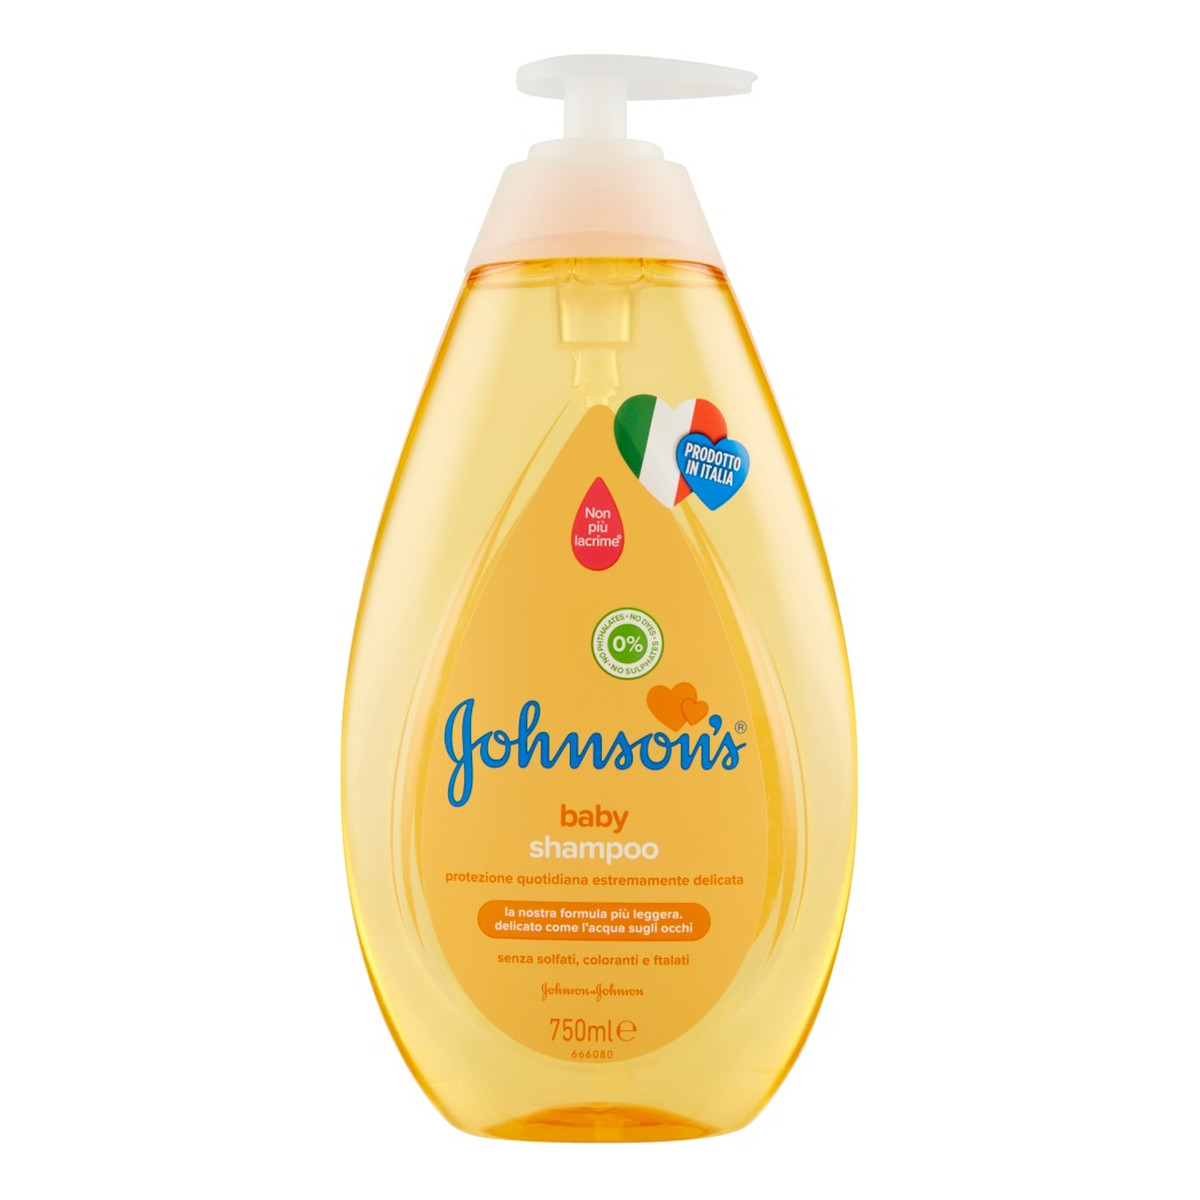 Johnson & Johnson Johnson's baby shampoo szampon do włosów dla dzieci z pompką 750ml